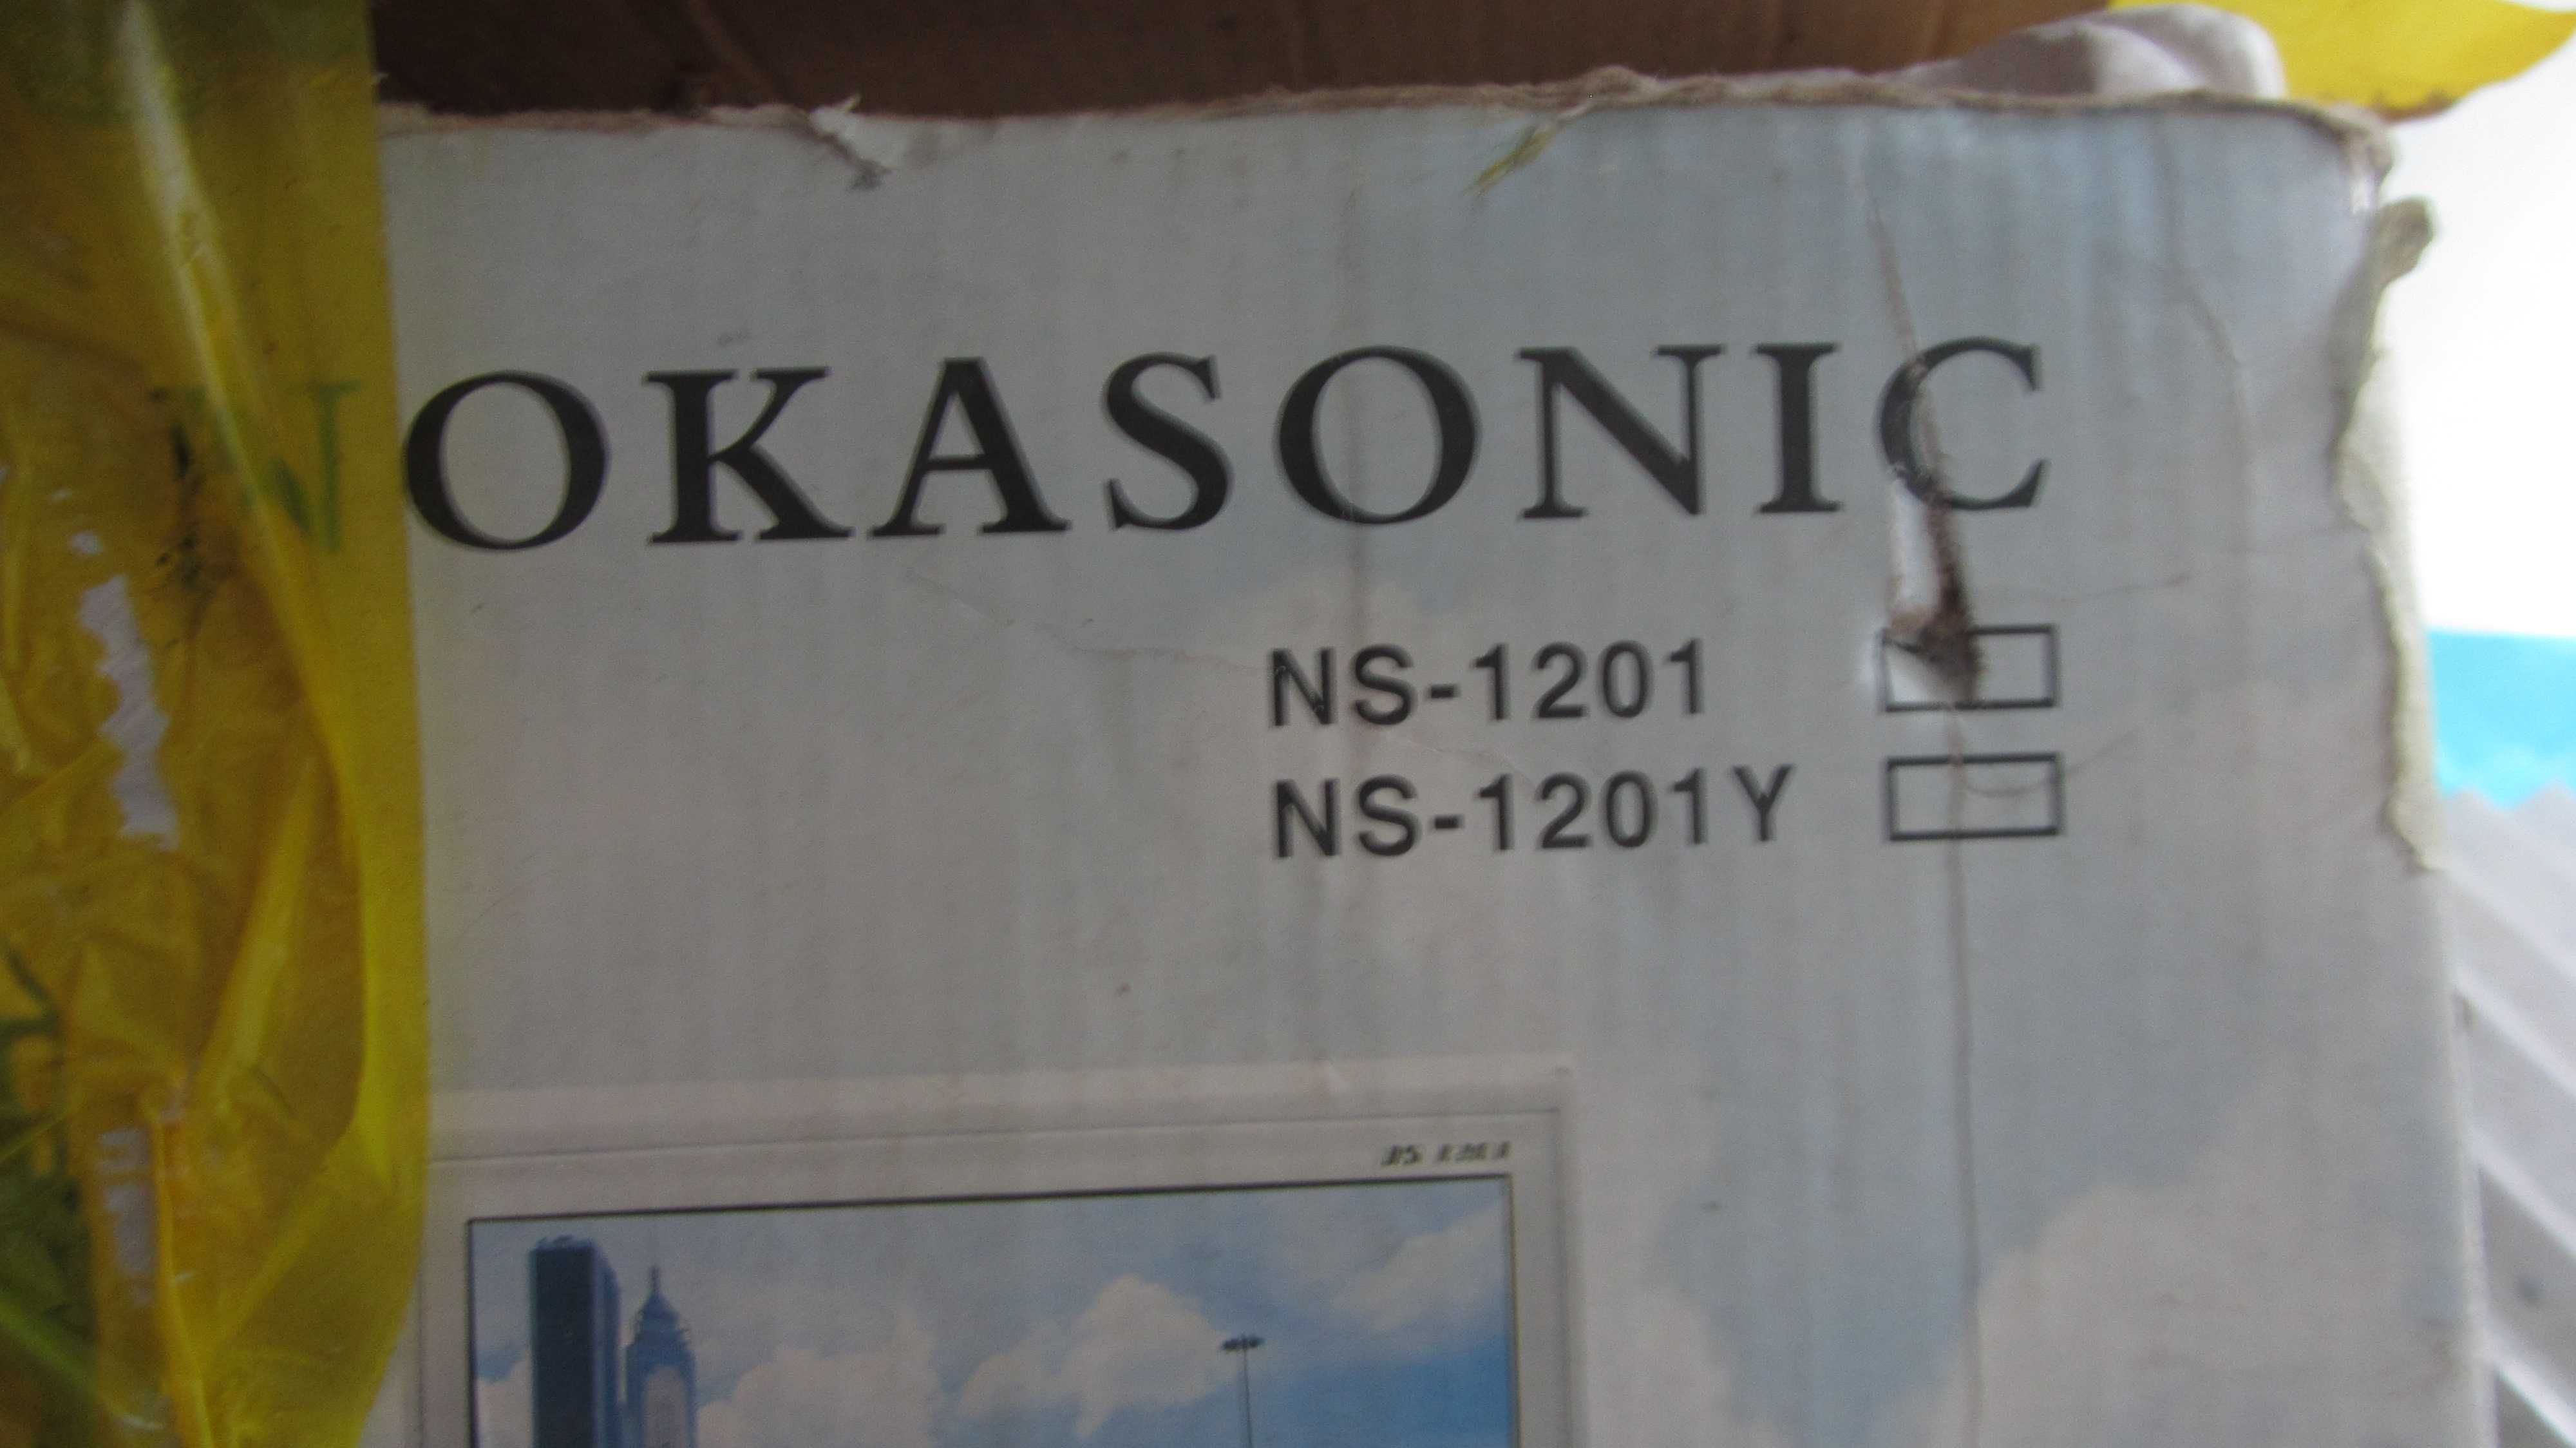 Кинескоп 12 дюймов чёрно-белый от нового телевизора Nokasonic NS-1201